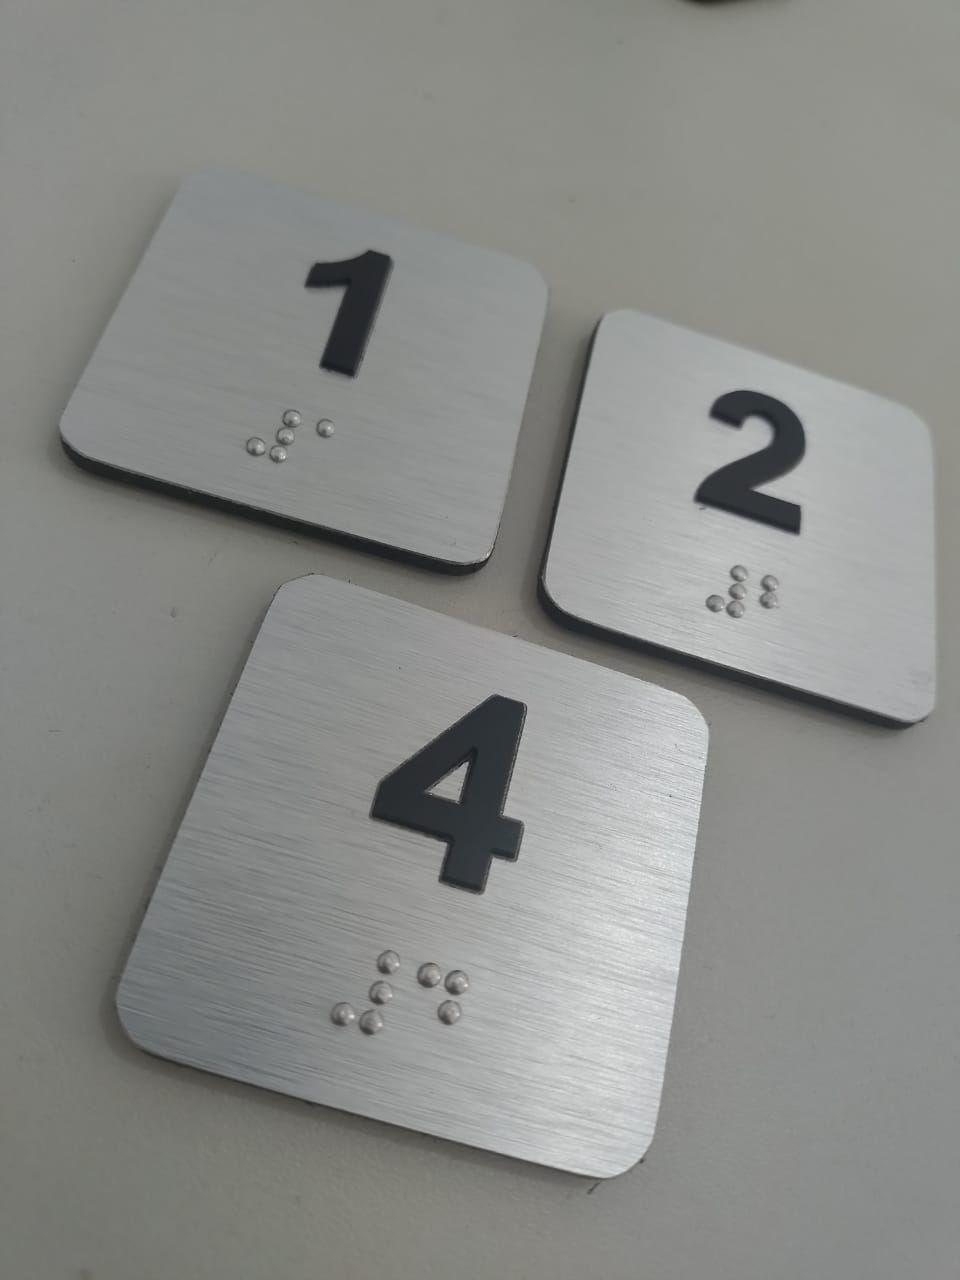 placa em braille para elevador